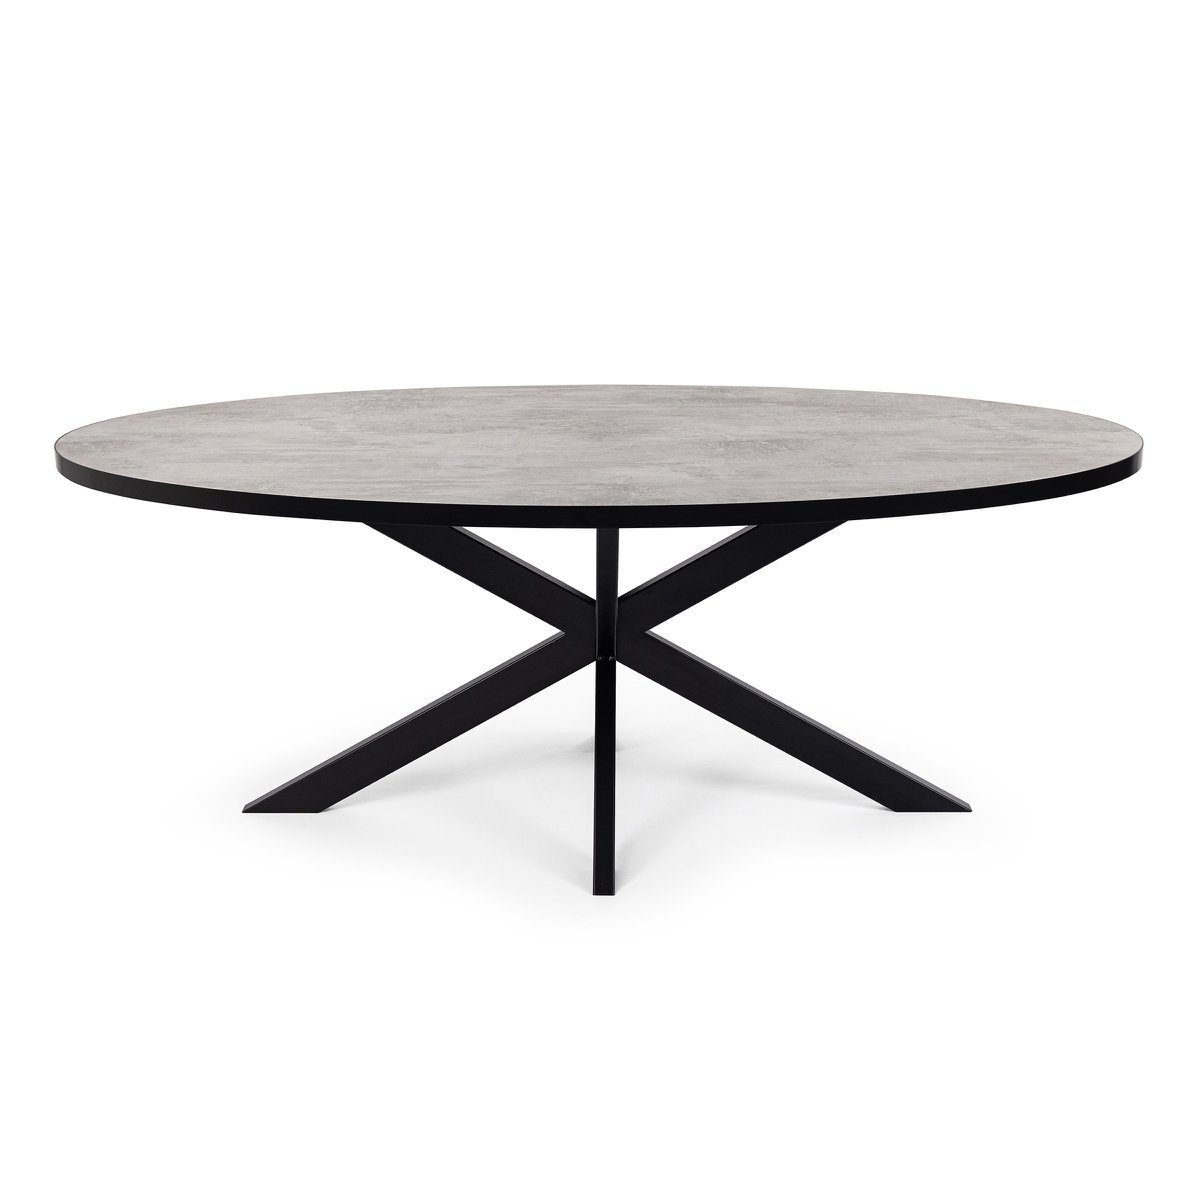 KantoormeubelenPlus Stalux Ovale eettafel 'Mees' 240 x 110cm, kleur zwart / beton